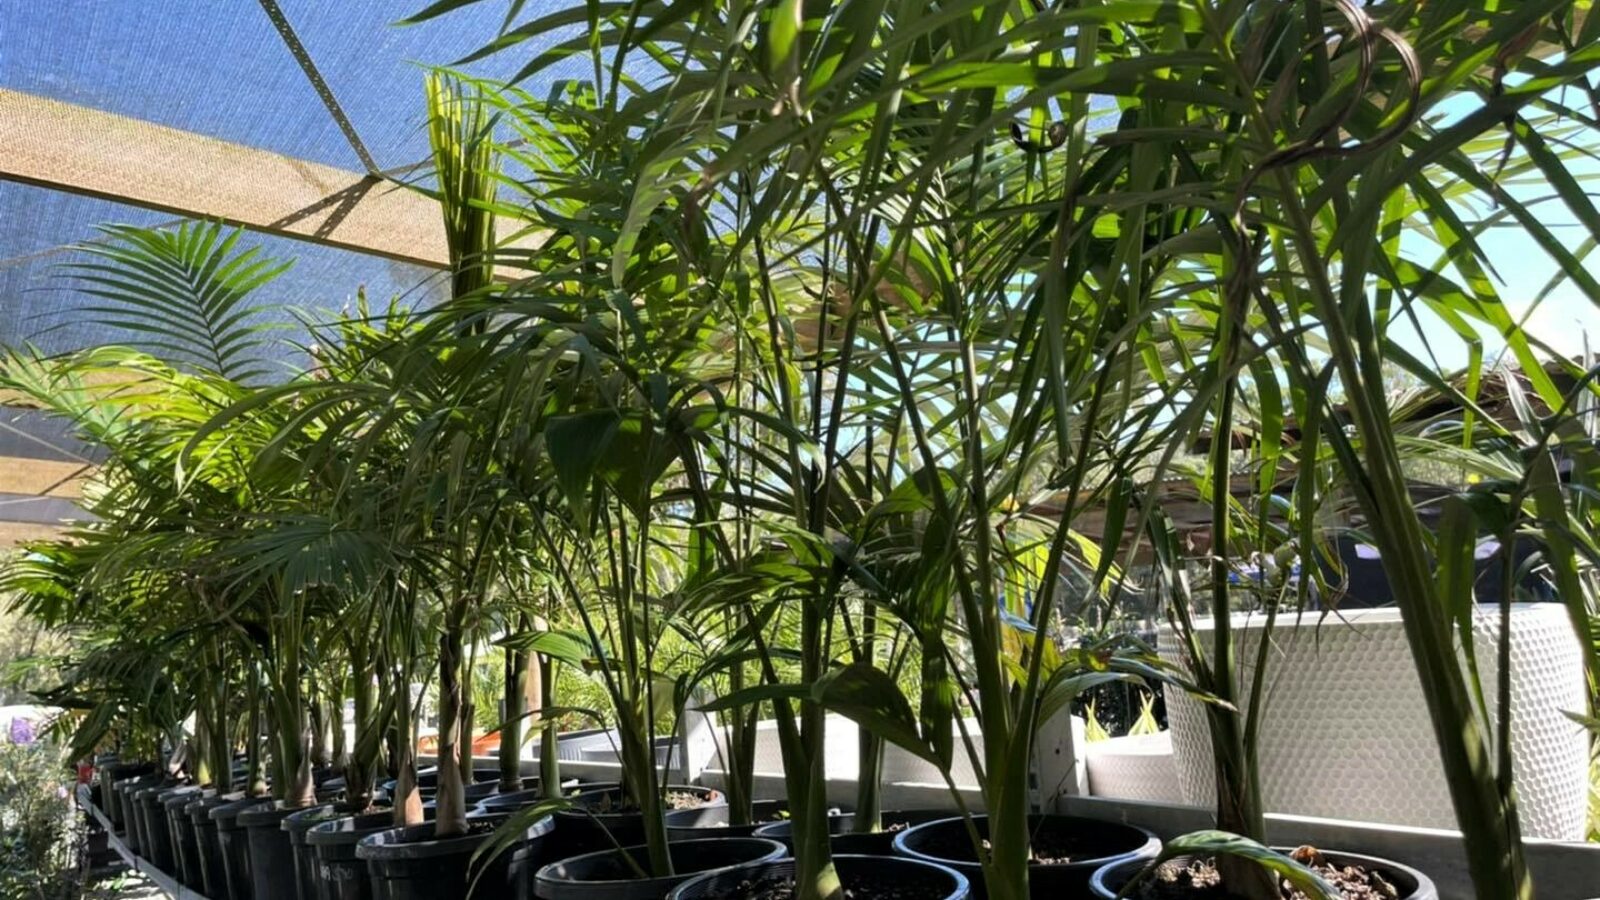 Palms Landscape Supplies plants